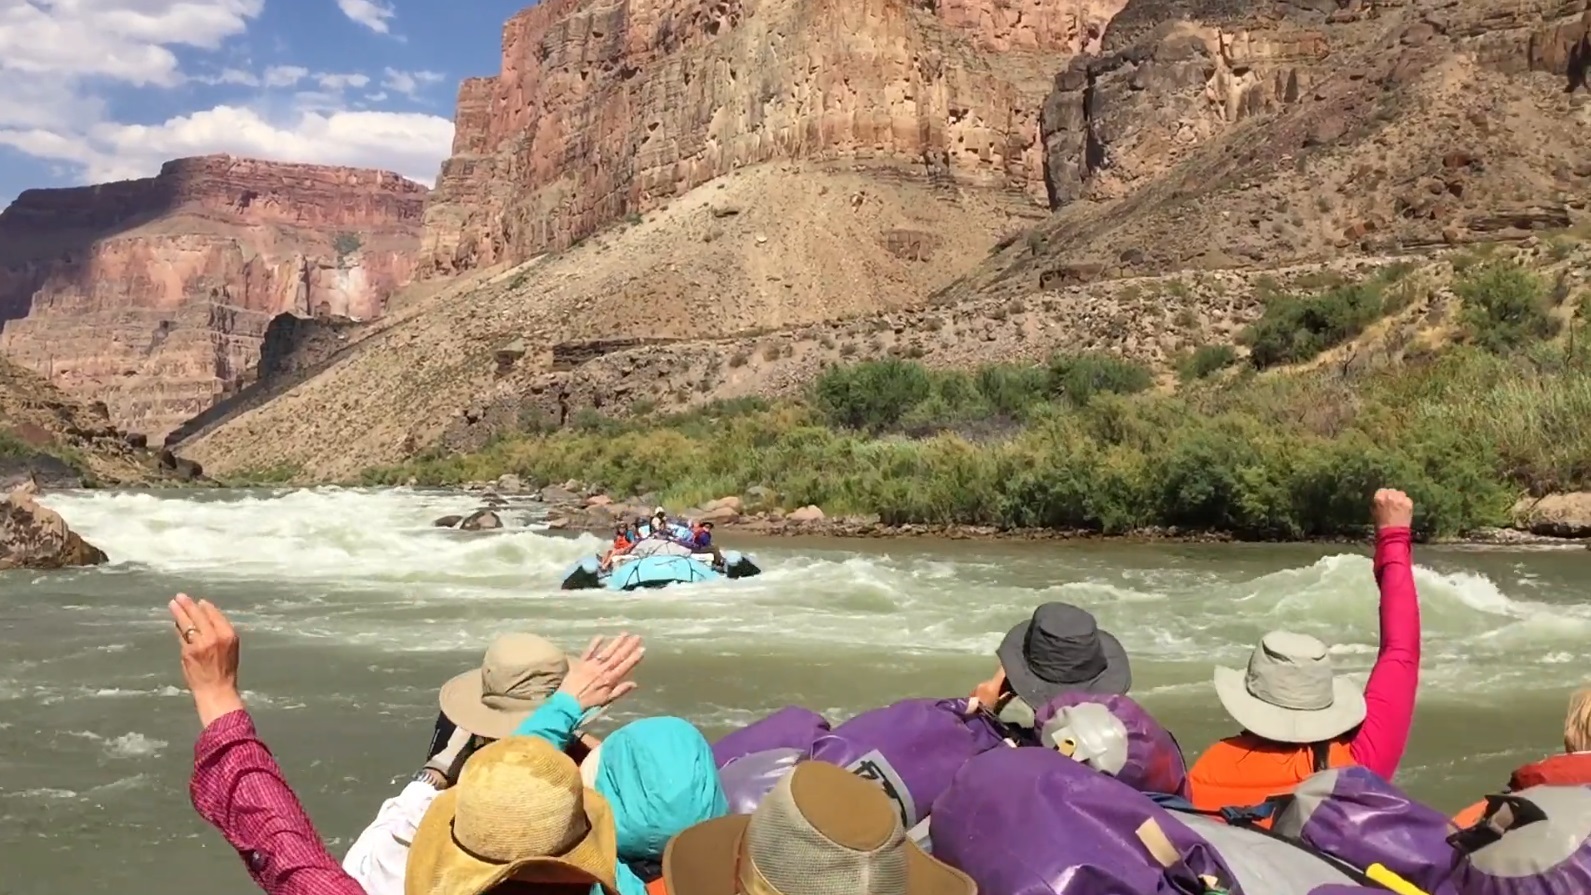 7-Day Grand Canyon River Trip Promo